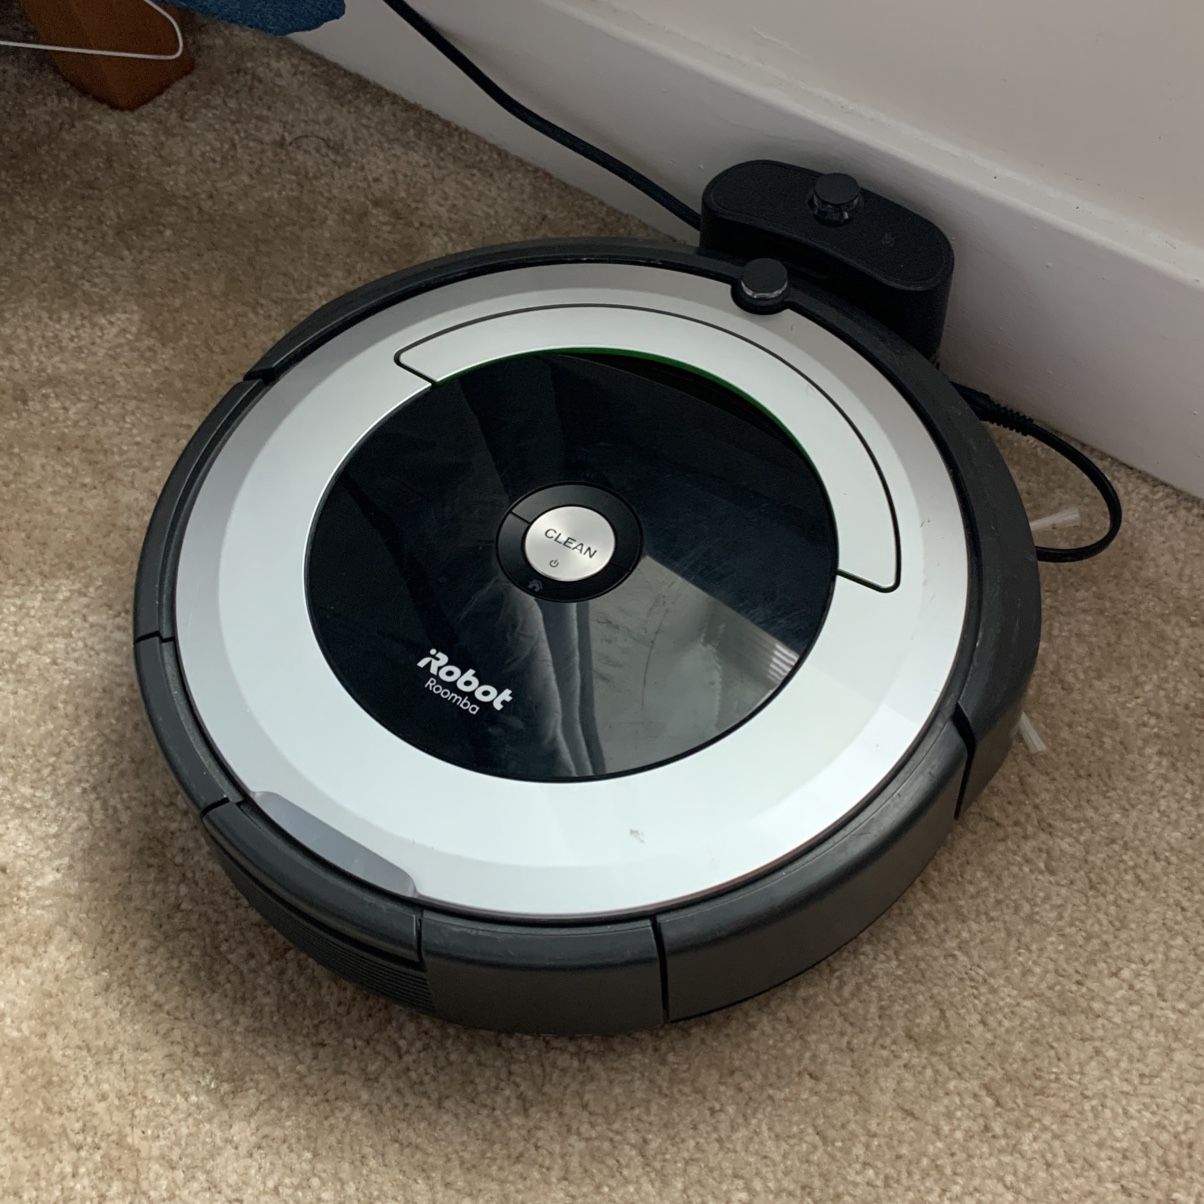 iRobot Roomba 600 Series Vacuum